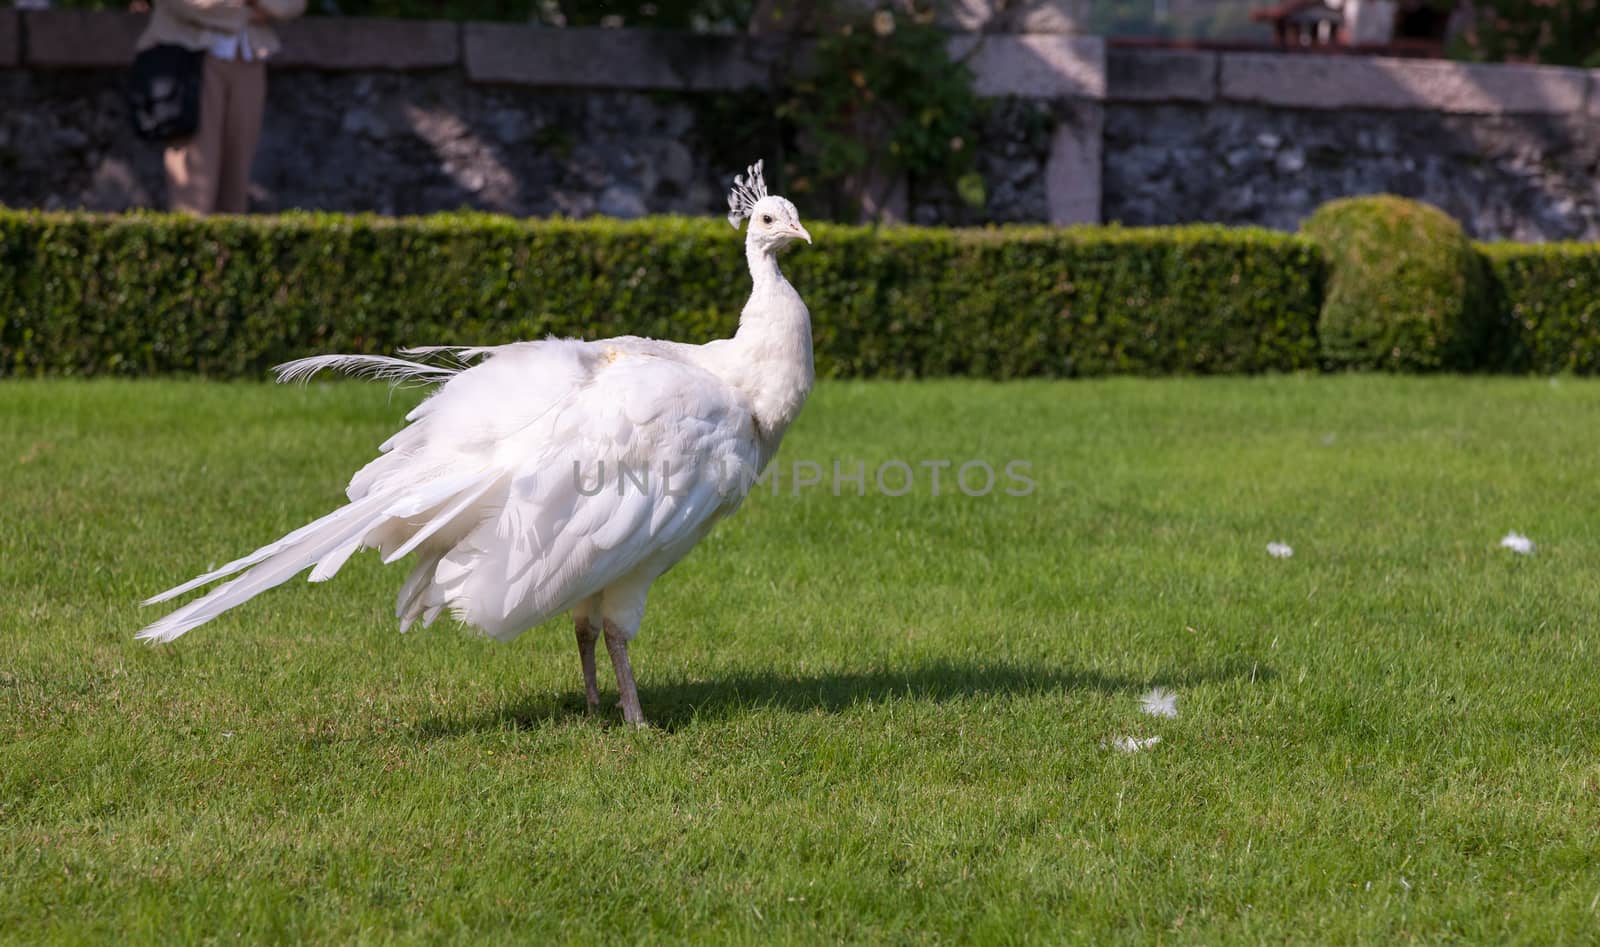 Beautiful and unusual white peacock wandering around